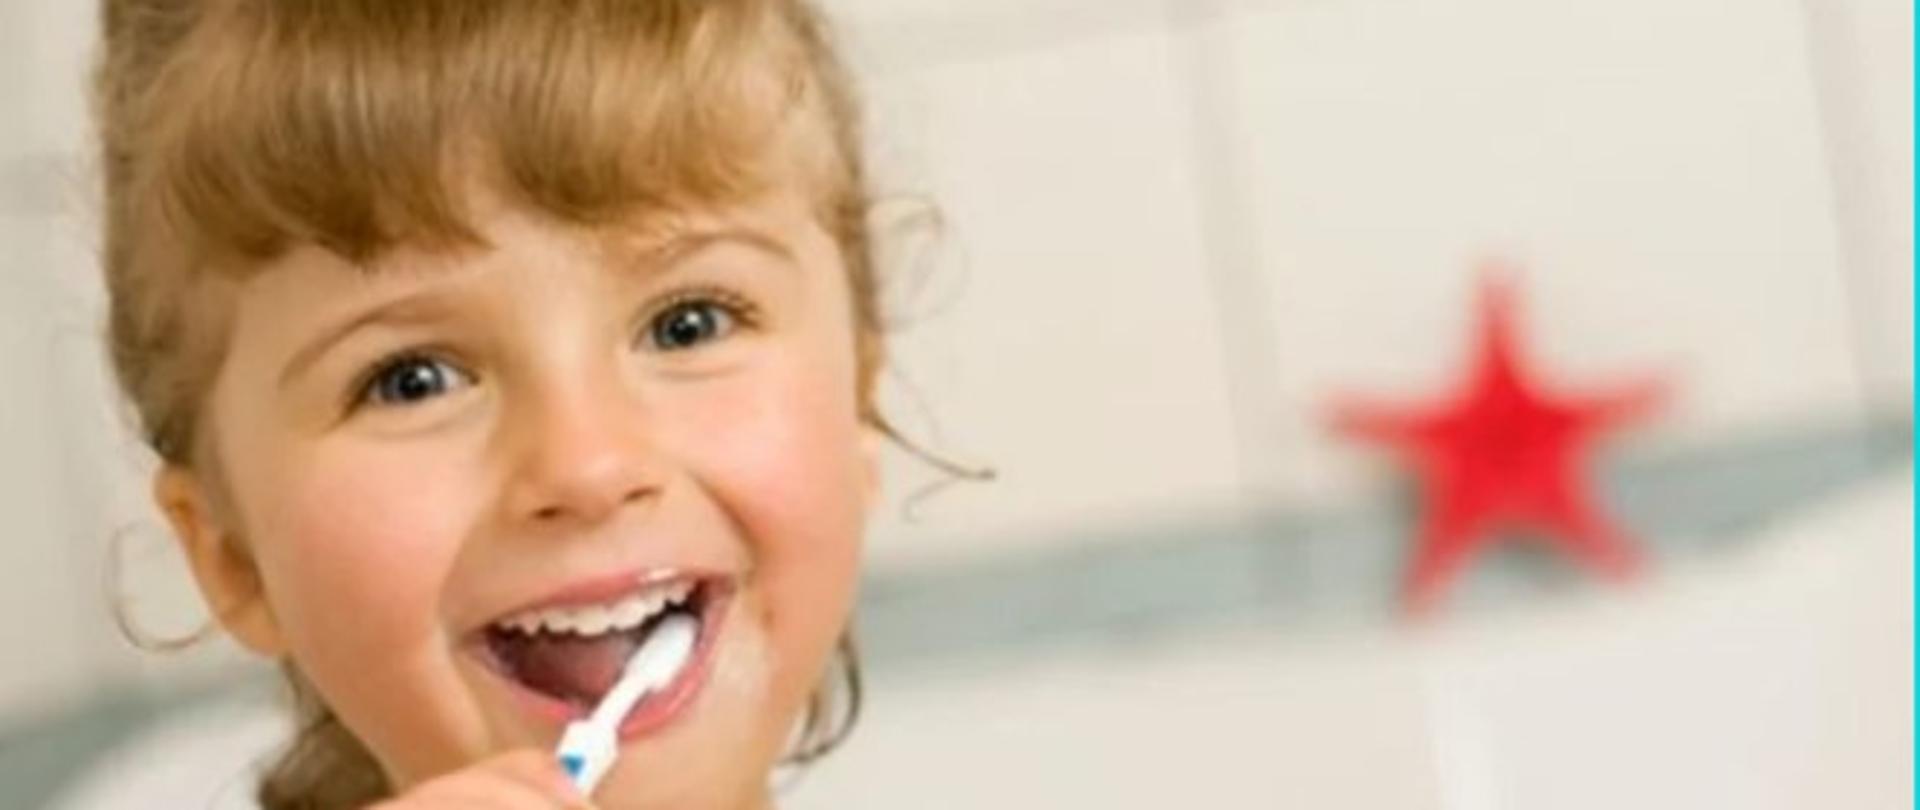 Na zdjęciu znajduje się dziewczynka w wieku przedszkolnym, która z uśmiechem myje zęby